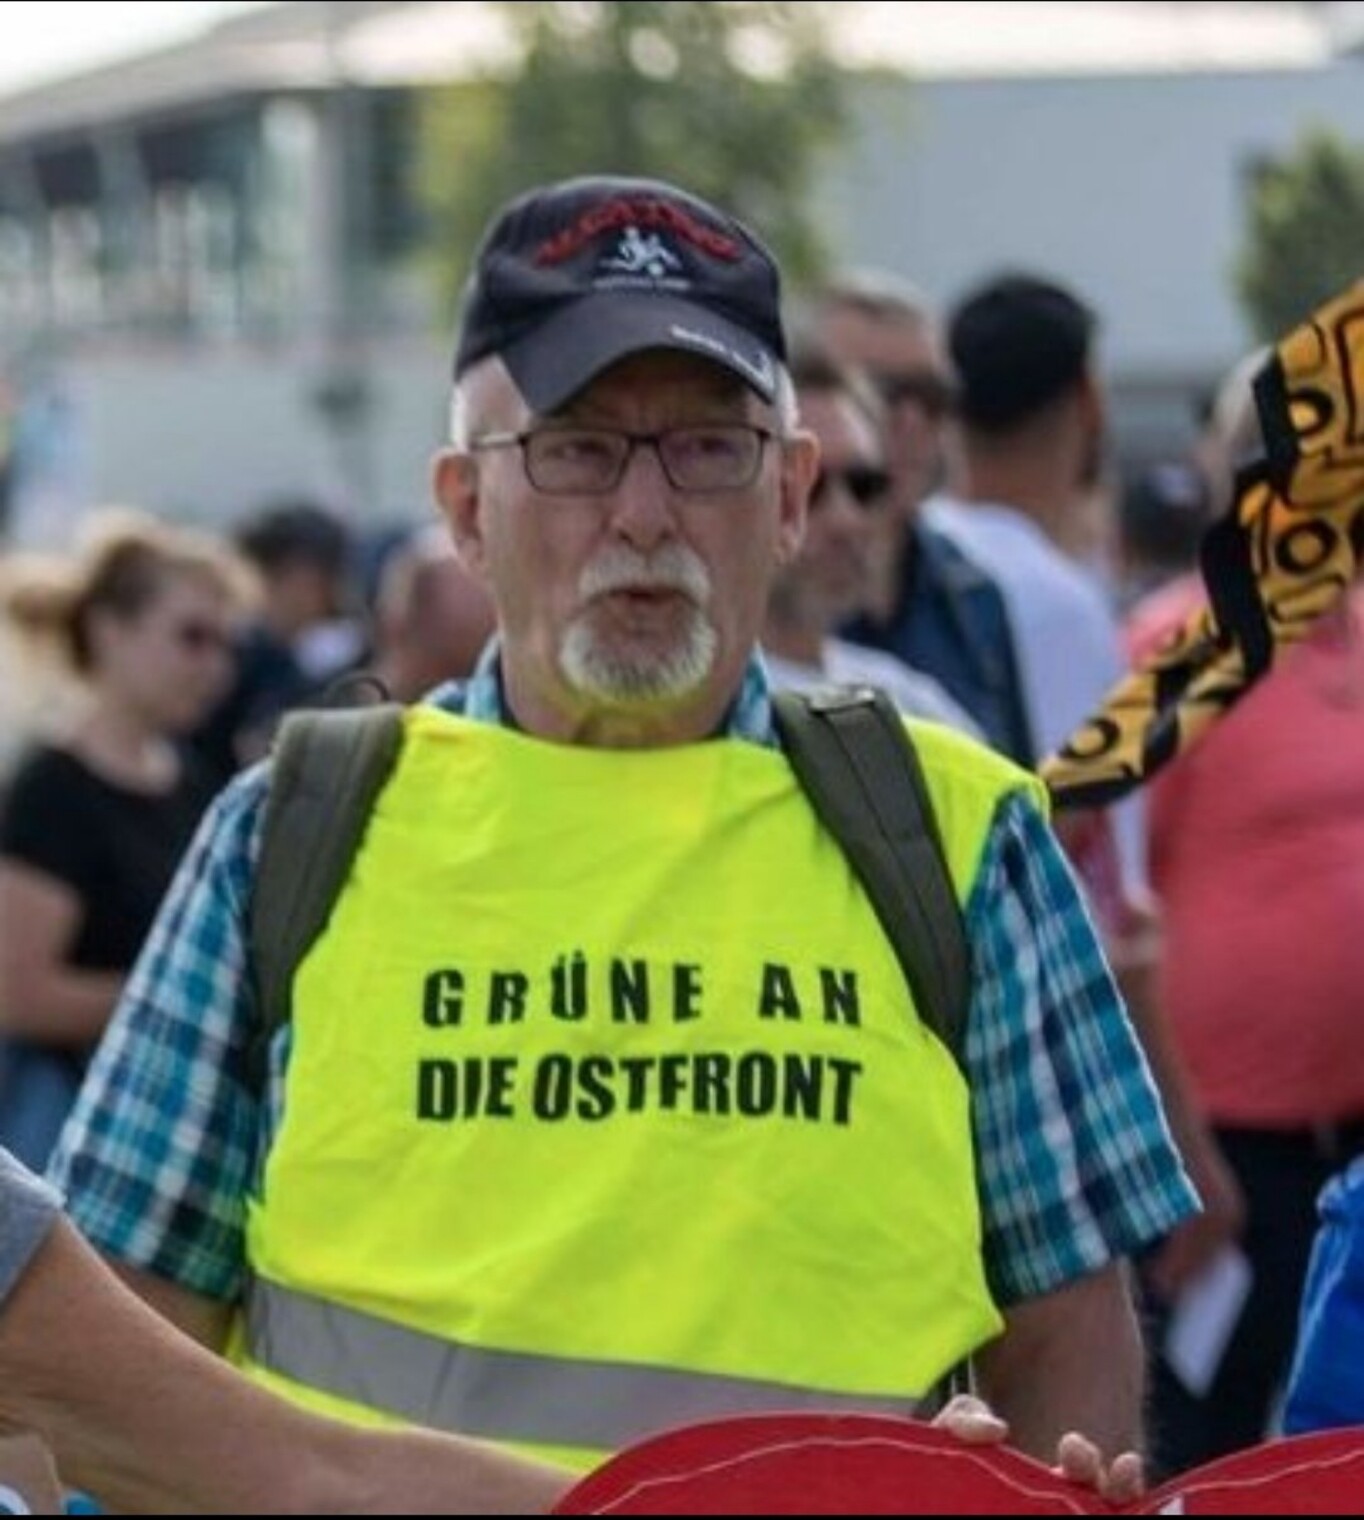 Ein Bild von der Demo in Erdingen heute: ein älterer Herr mit grauem Kinn-Bärtchen und Basecap trägt eine signalgrüne Warnweste über einem karierten Hemd, Aufschrift "Grüne an die Ostfront"